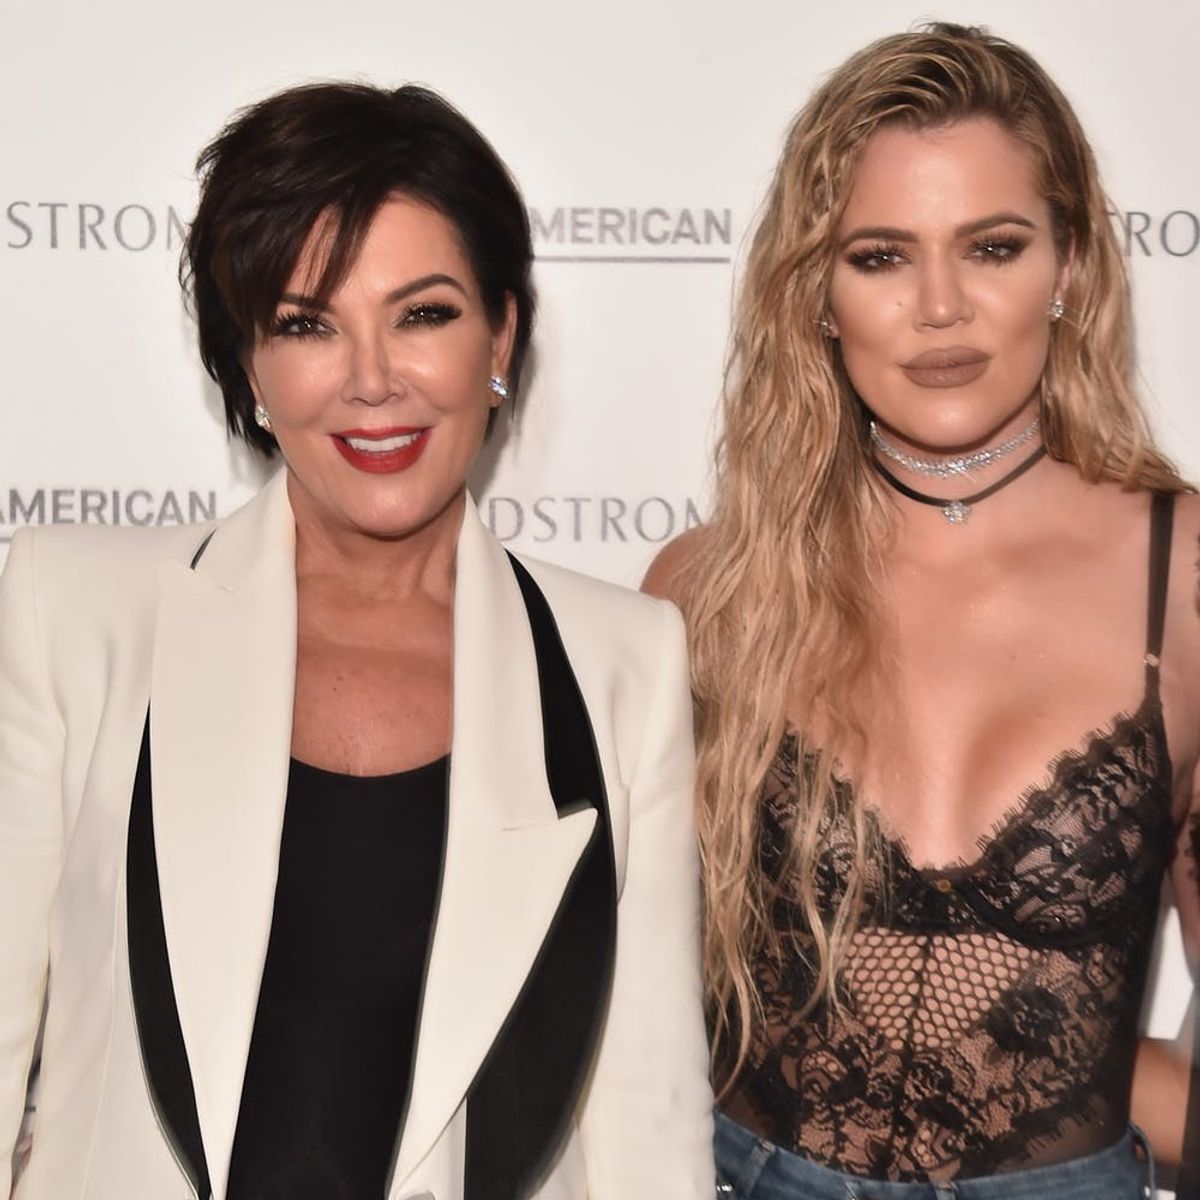 Kris Jenner Breaks Her Silence on Daughter Khloé Kardashian’s Pregnancy